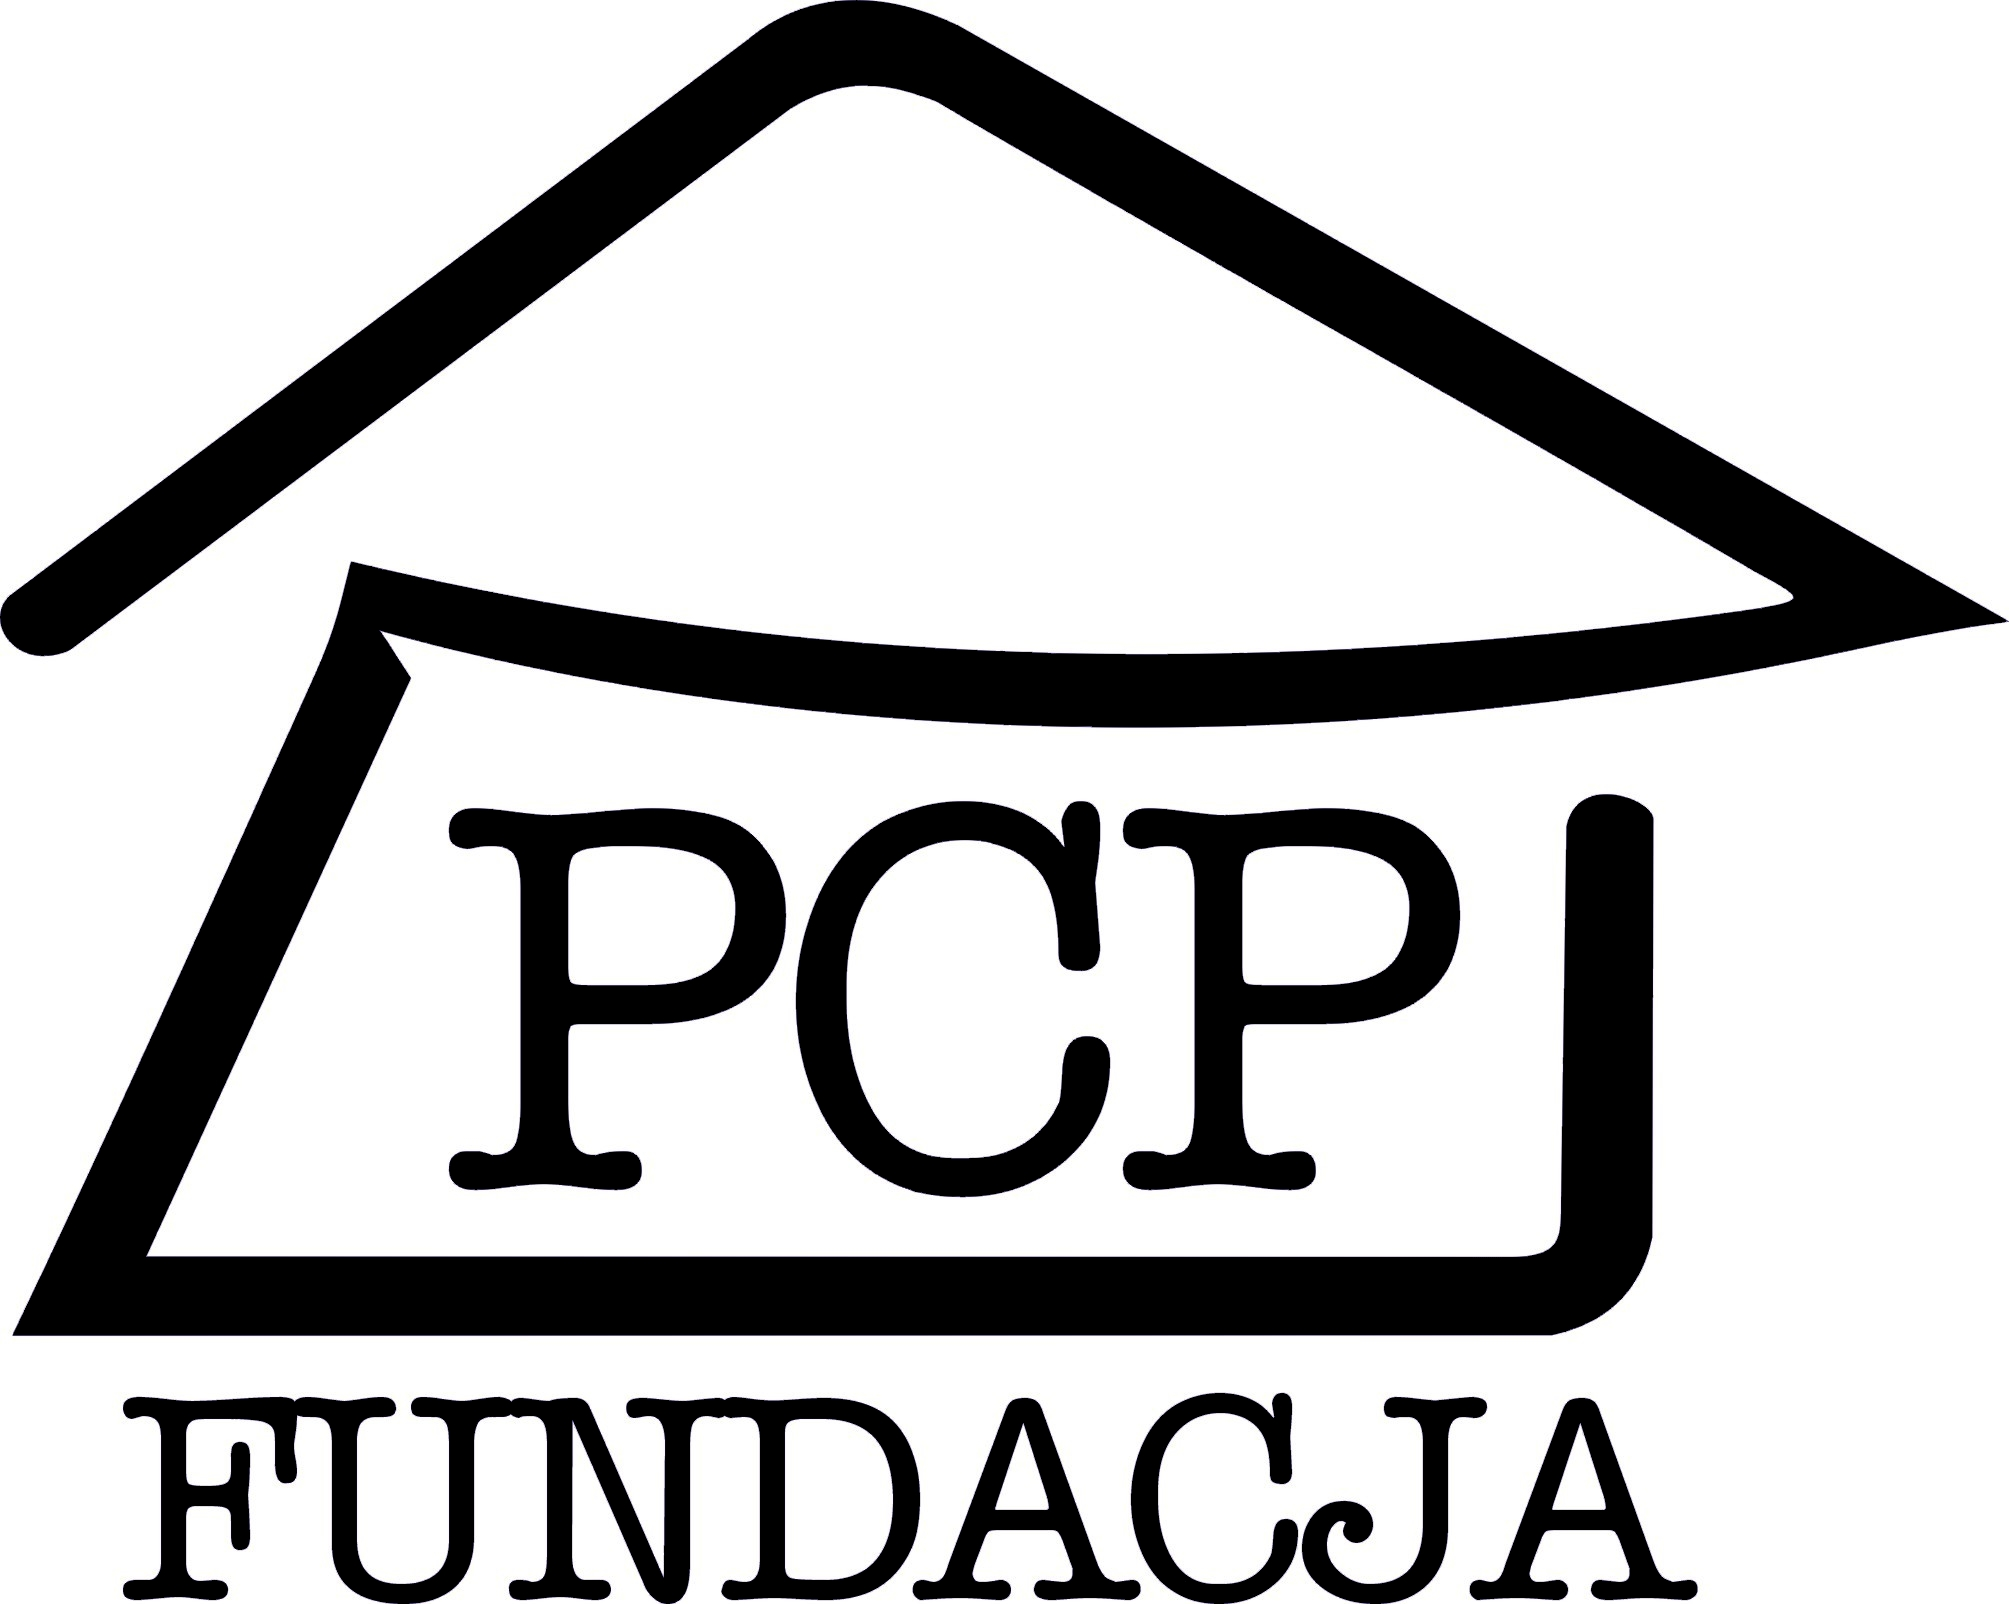 Identyfikator: FPCP/20/11 Puławy, dnia 01.09.2011r.